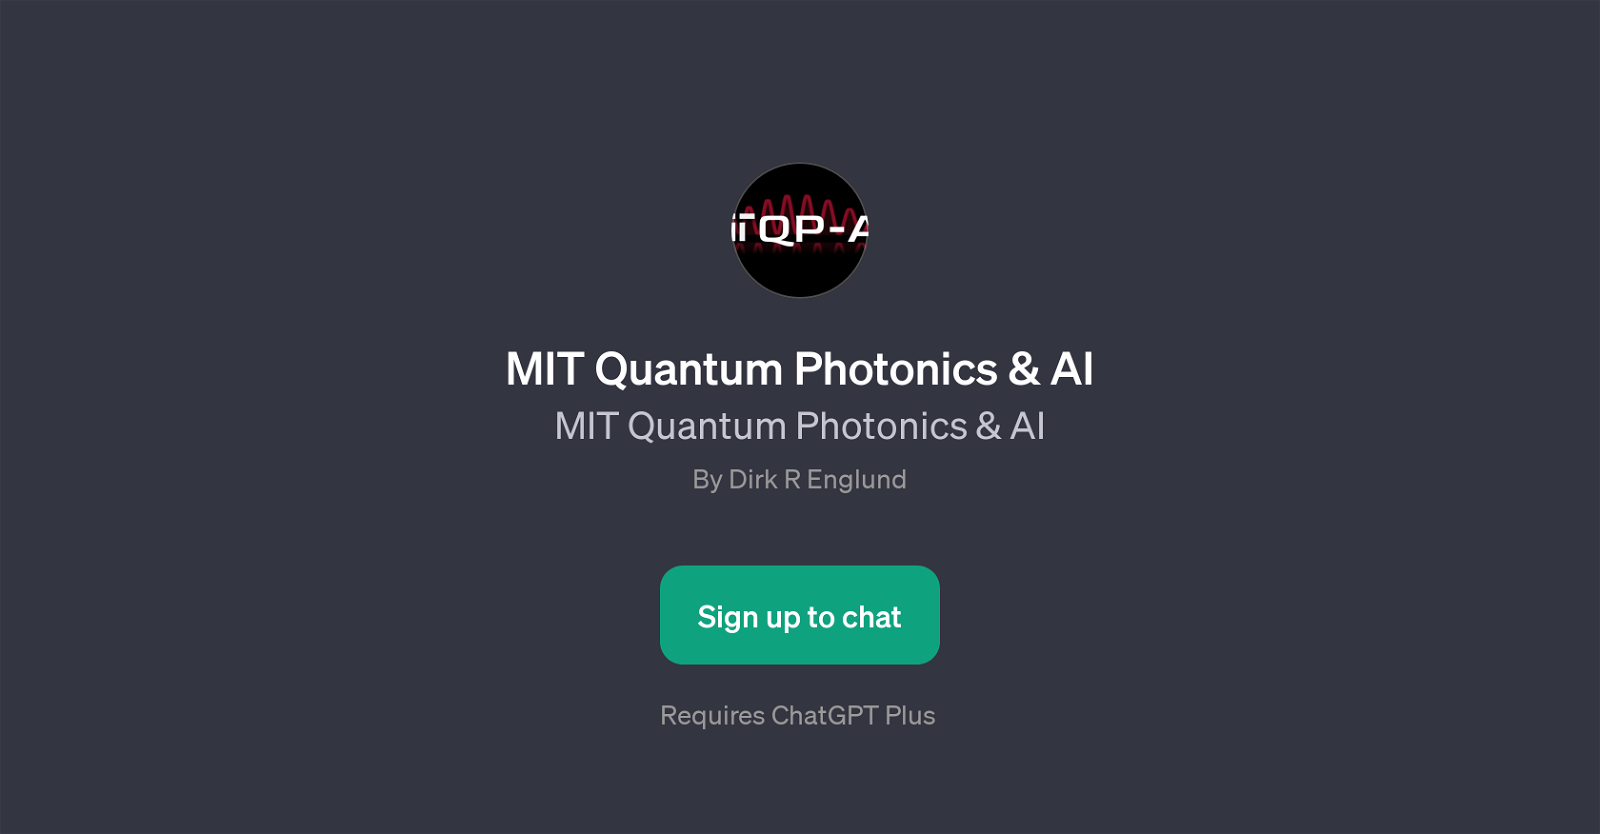 MIT Quantum Photonics & AI website